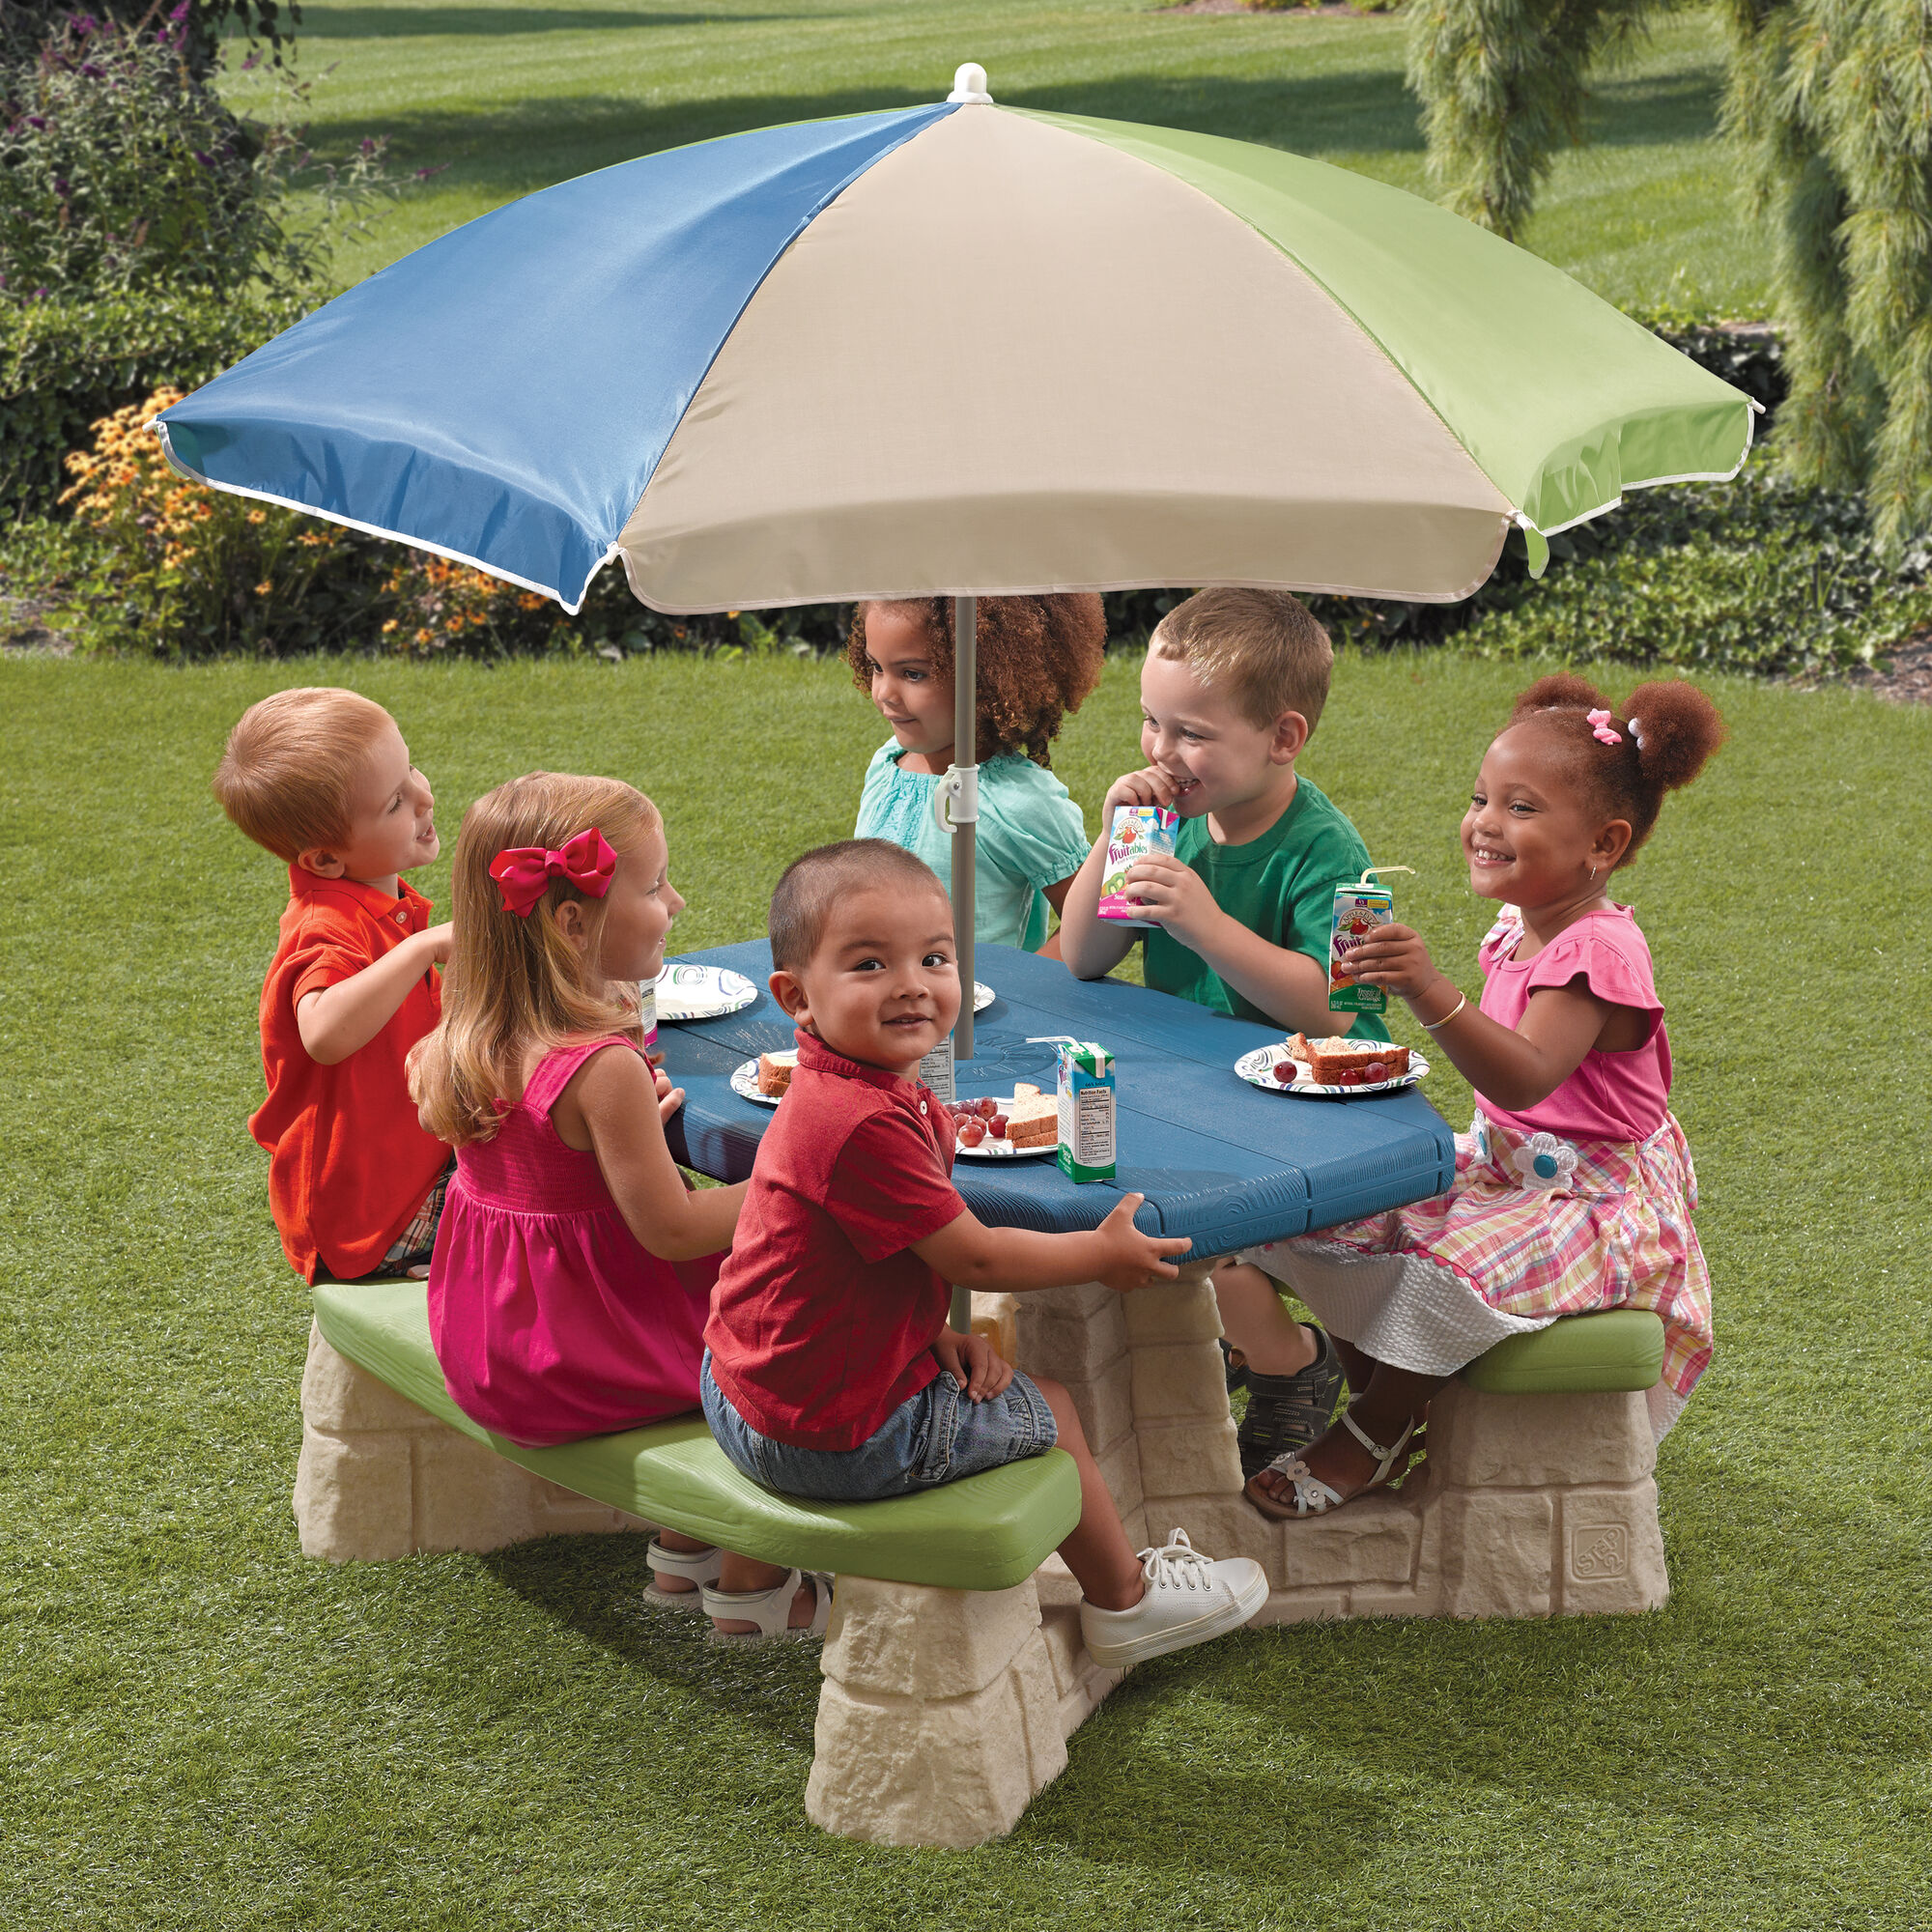 Step2 Naturally Playful Picknicktafel met Parasol groen/blauw